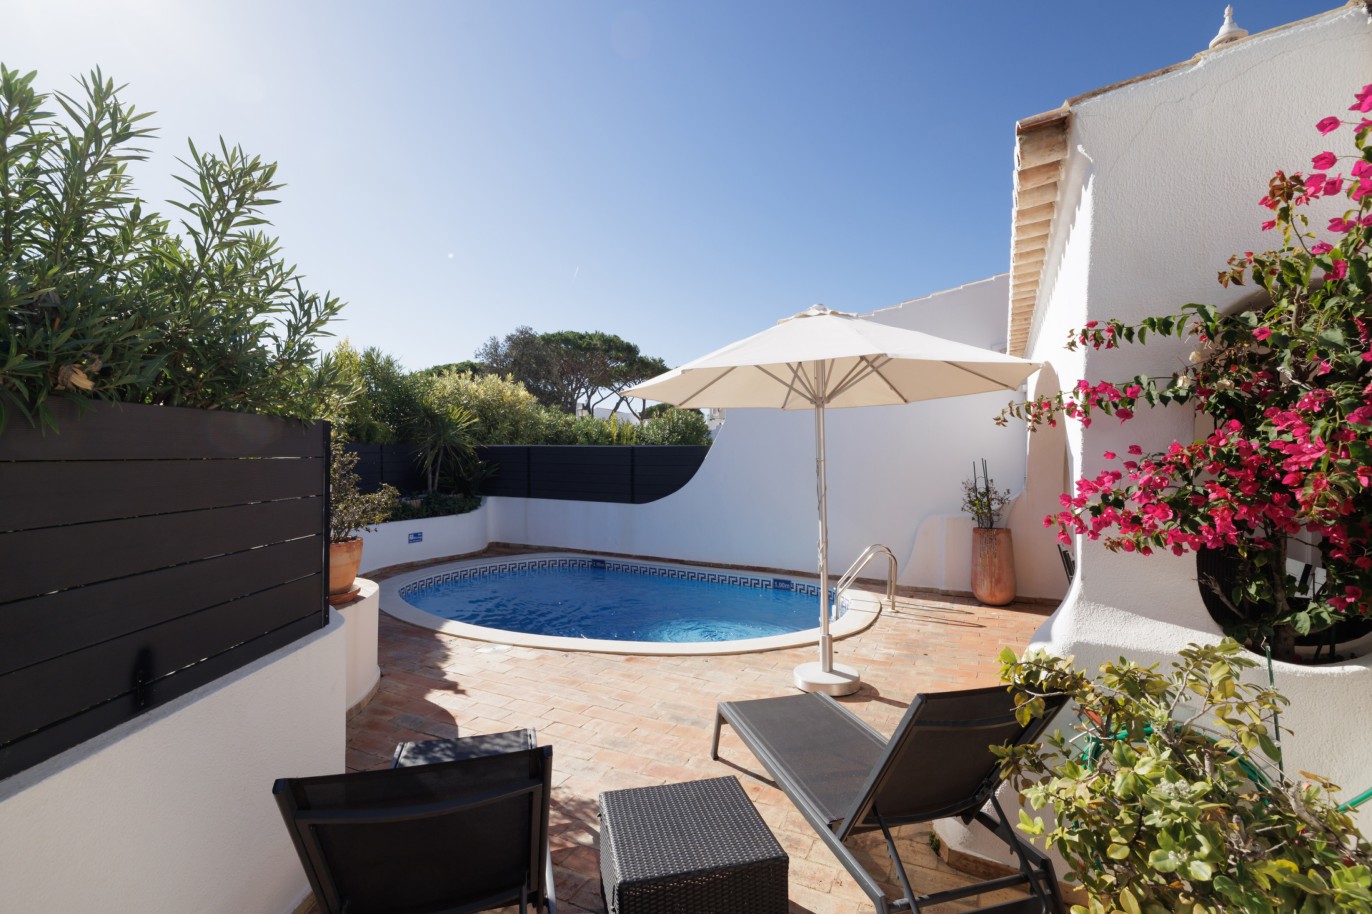 Moradia em banda com piscina, para venda em Vale do Lobo, Algarve_255014